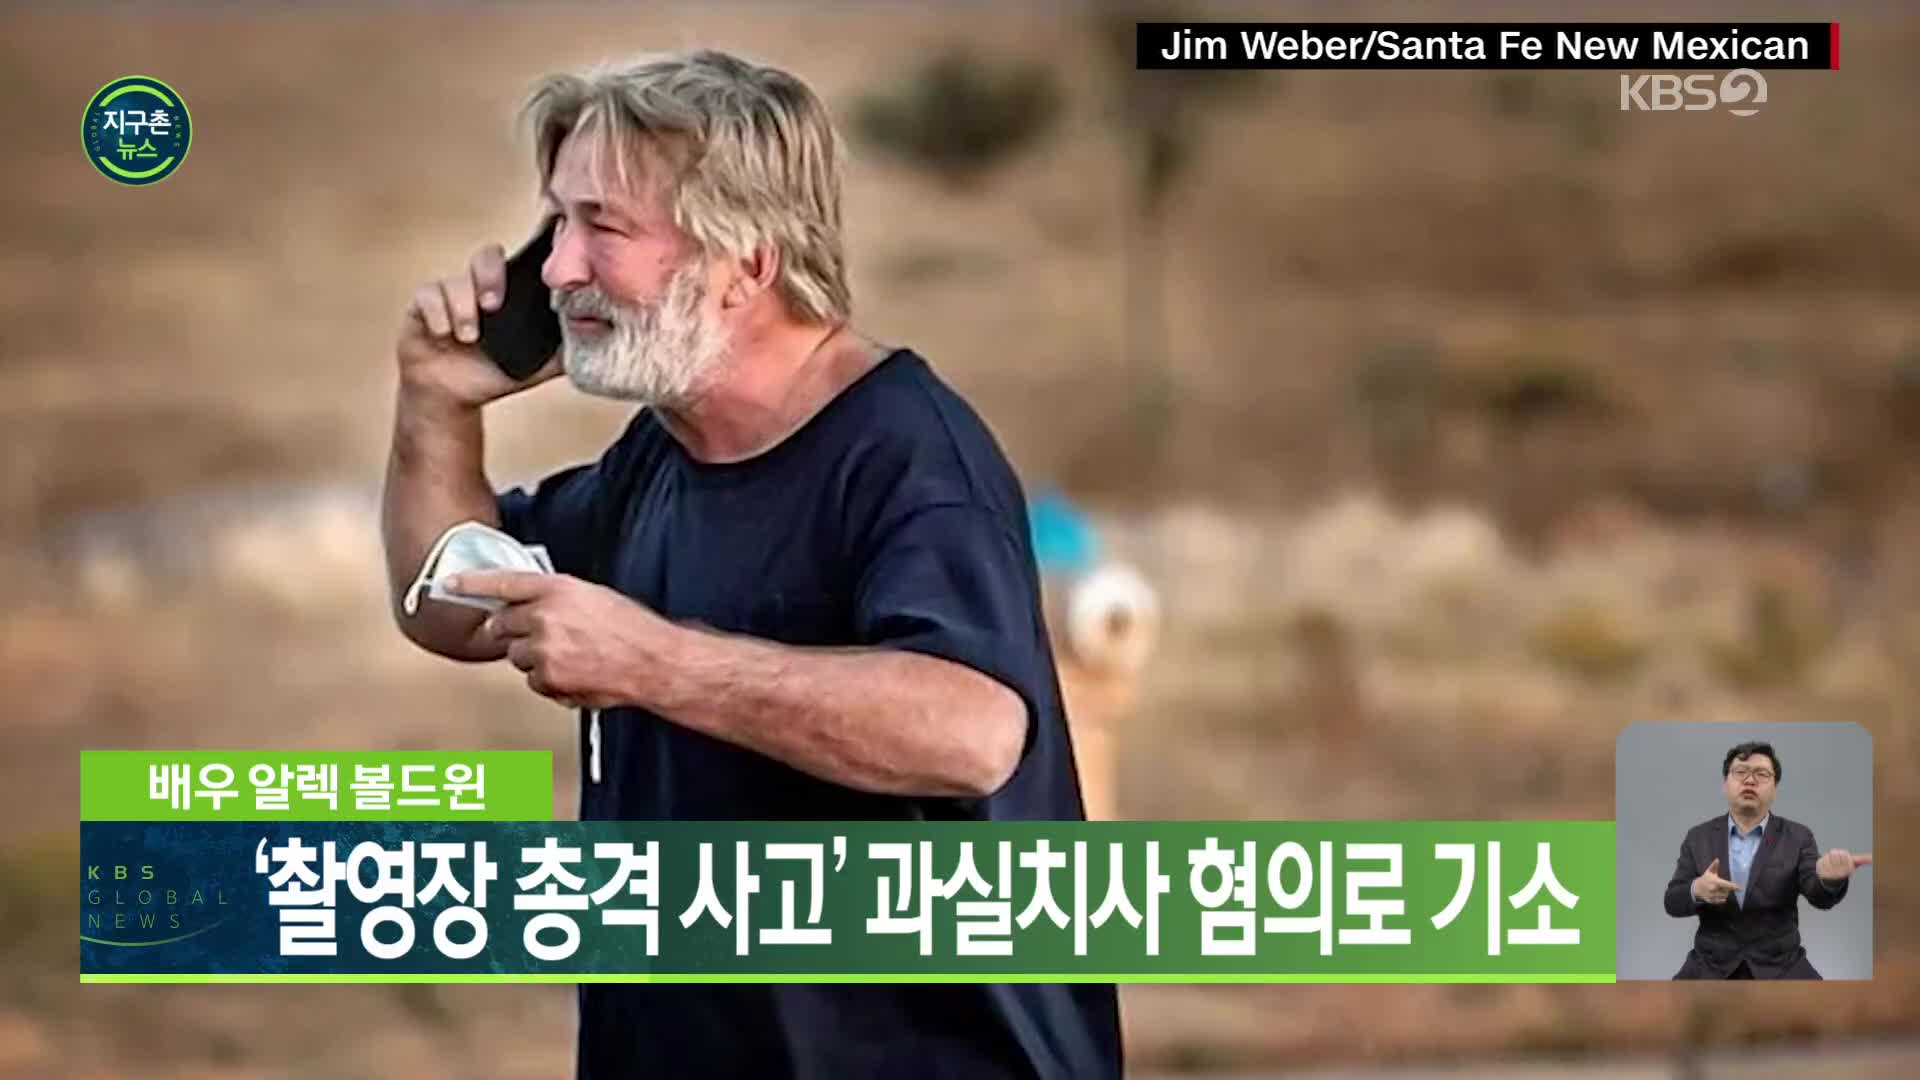 배우 알렉 볼드윈, ‘촬영장 총격 사고’ 과실치사 혐의로 기소